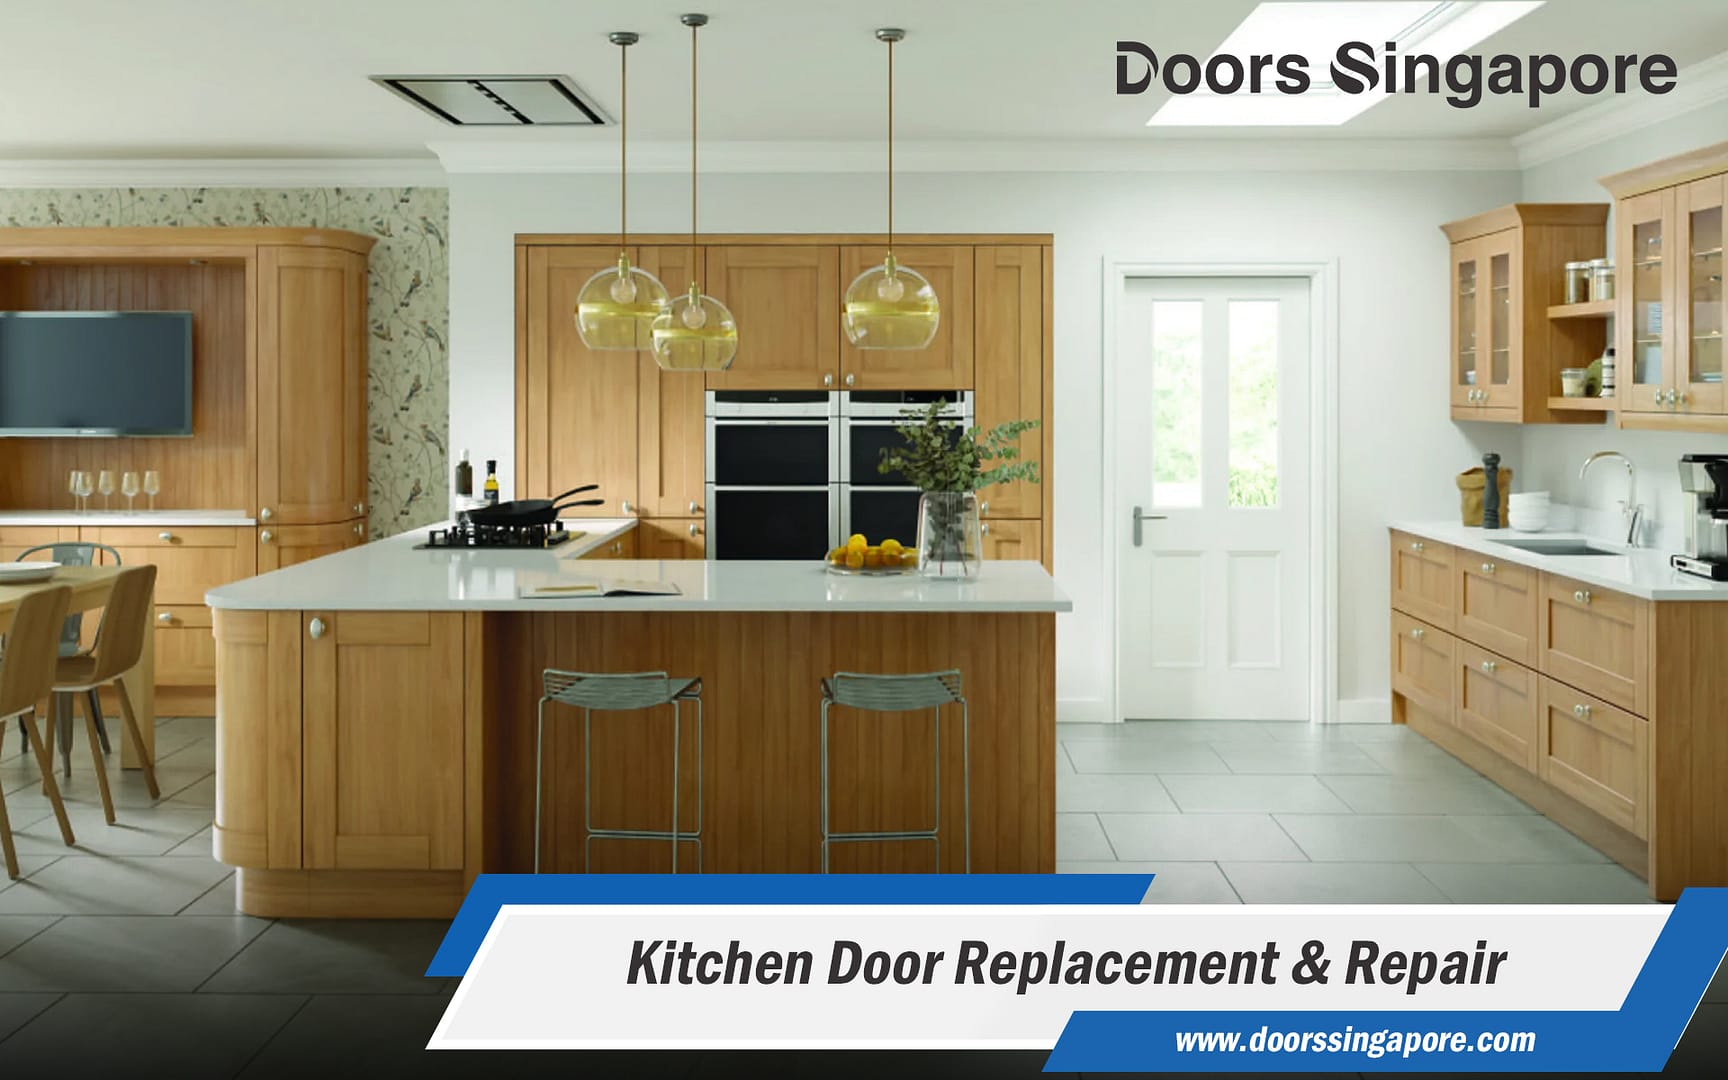 Kitchen Door Replacement & Repair